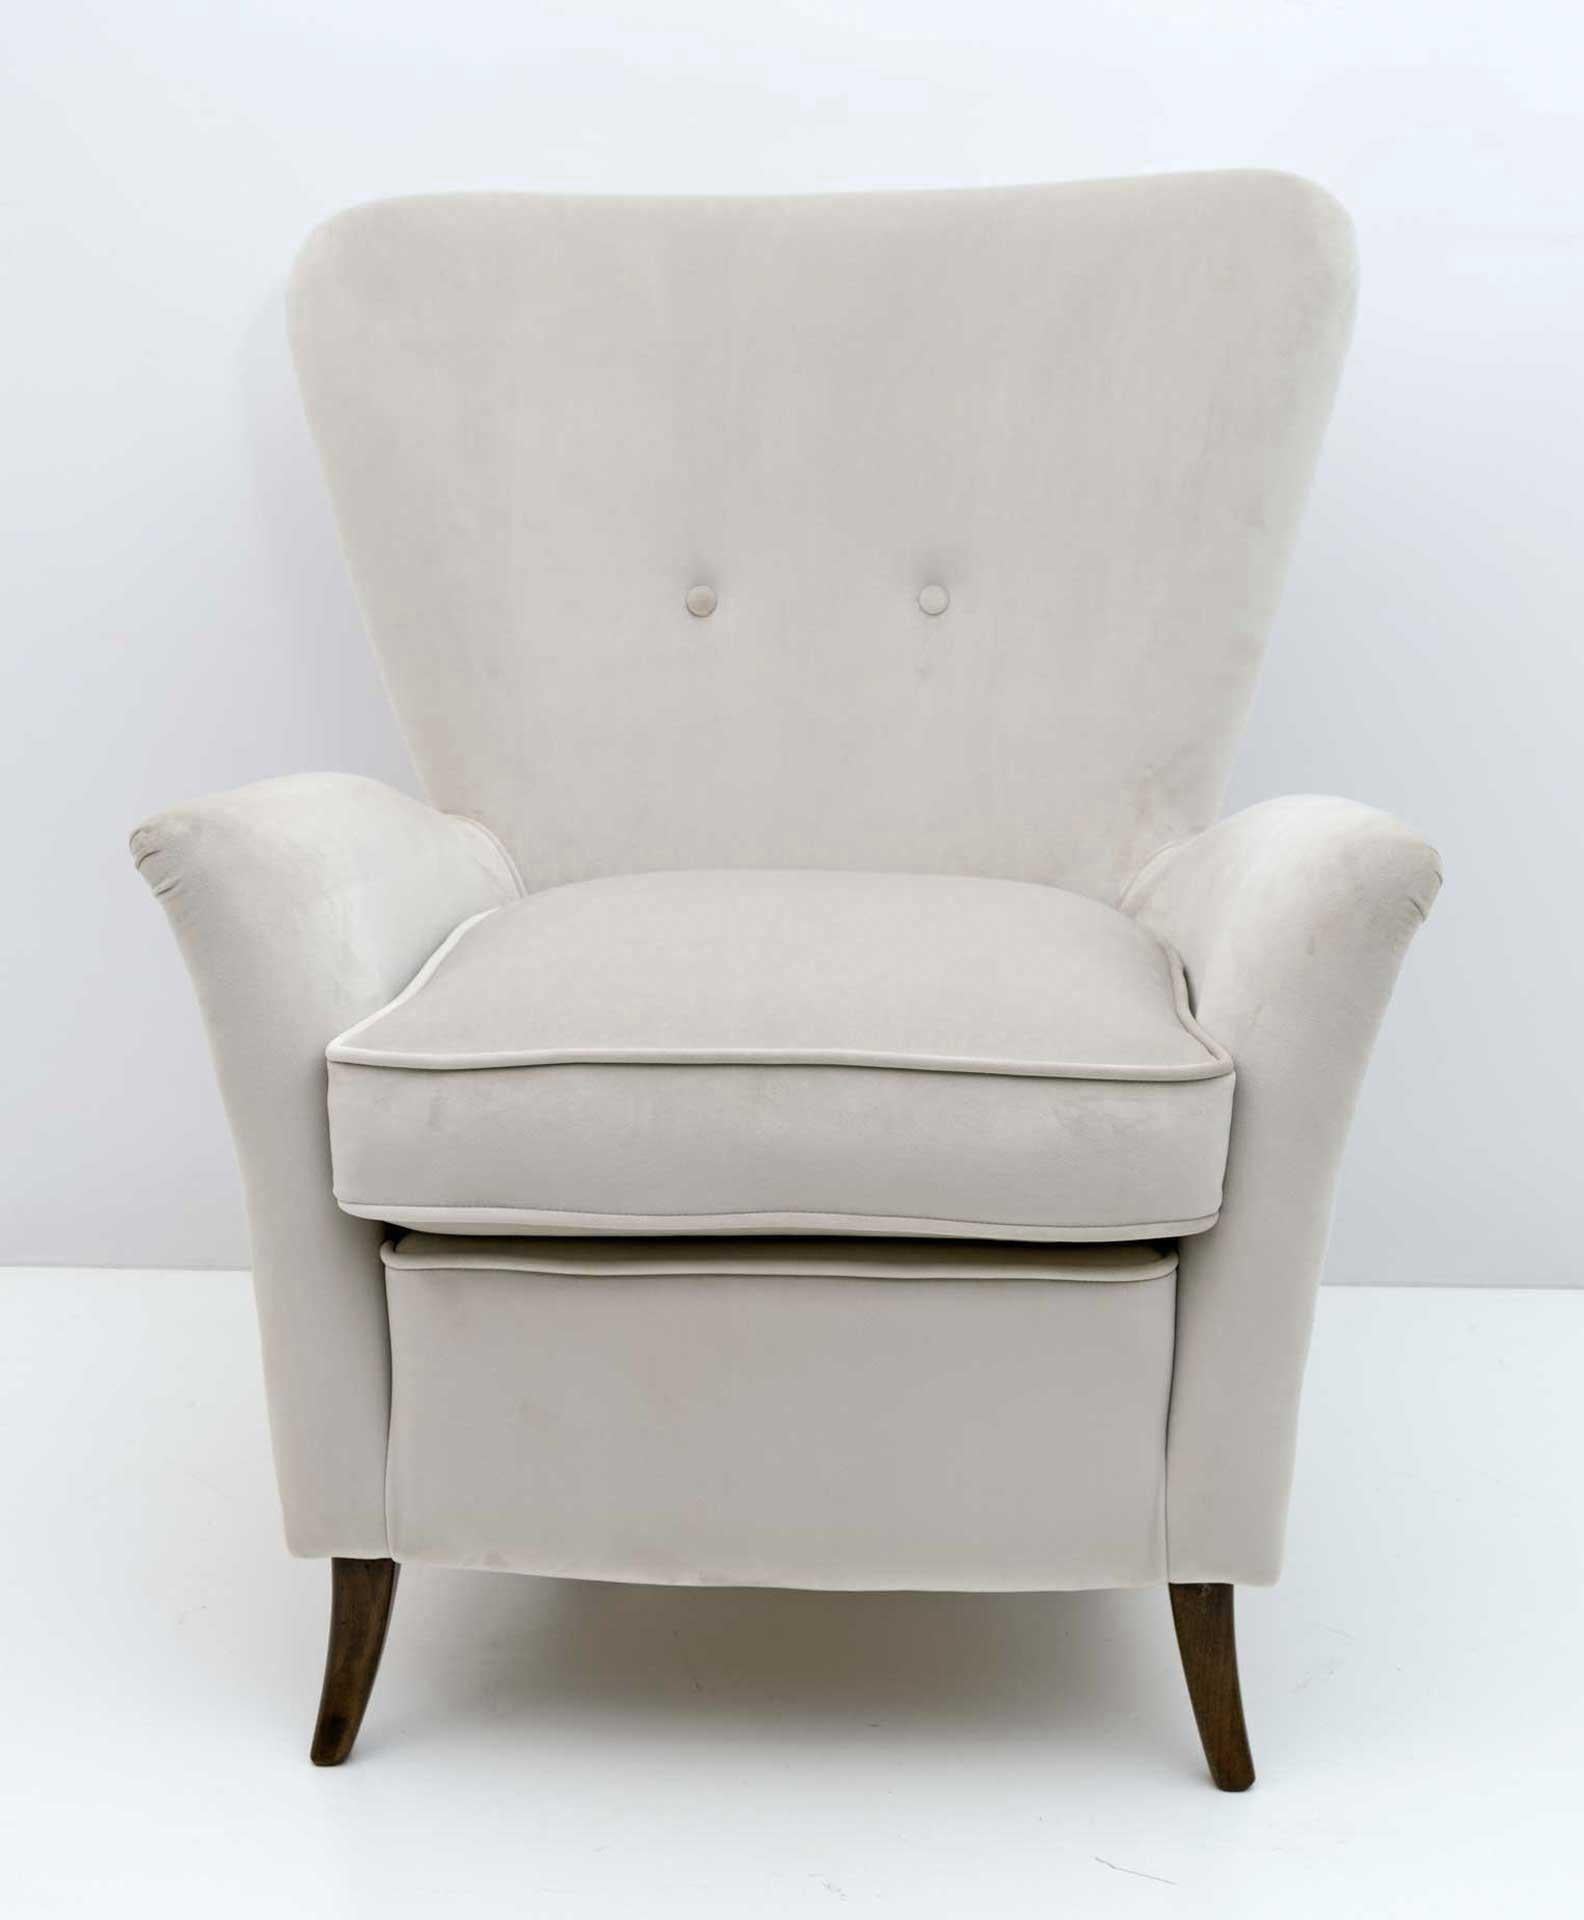 Luxuriöser Sessel im Art-Déco-Stil, entworfen von Gio Ponti für das Hotel Bristol Meran Italien.
Loungesessel mit niedrigen Armlehnen und einer skulpturalen Form.
Hergestellt in Italien in den frühen 1950er Jahren
Vollständig restauriert und neu